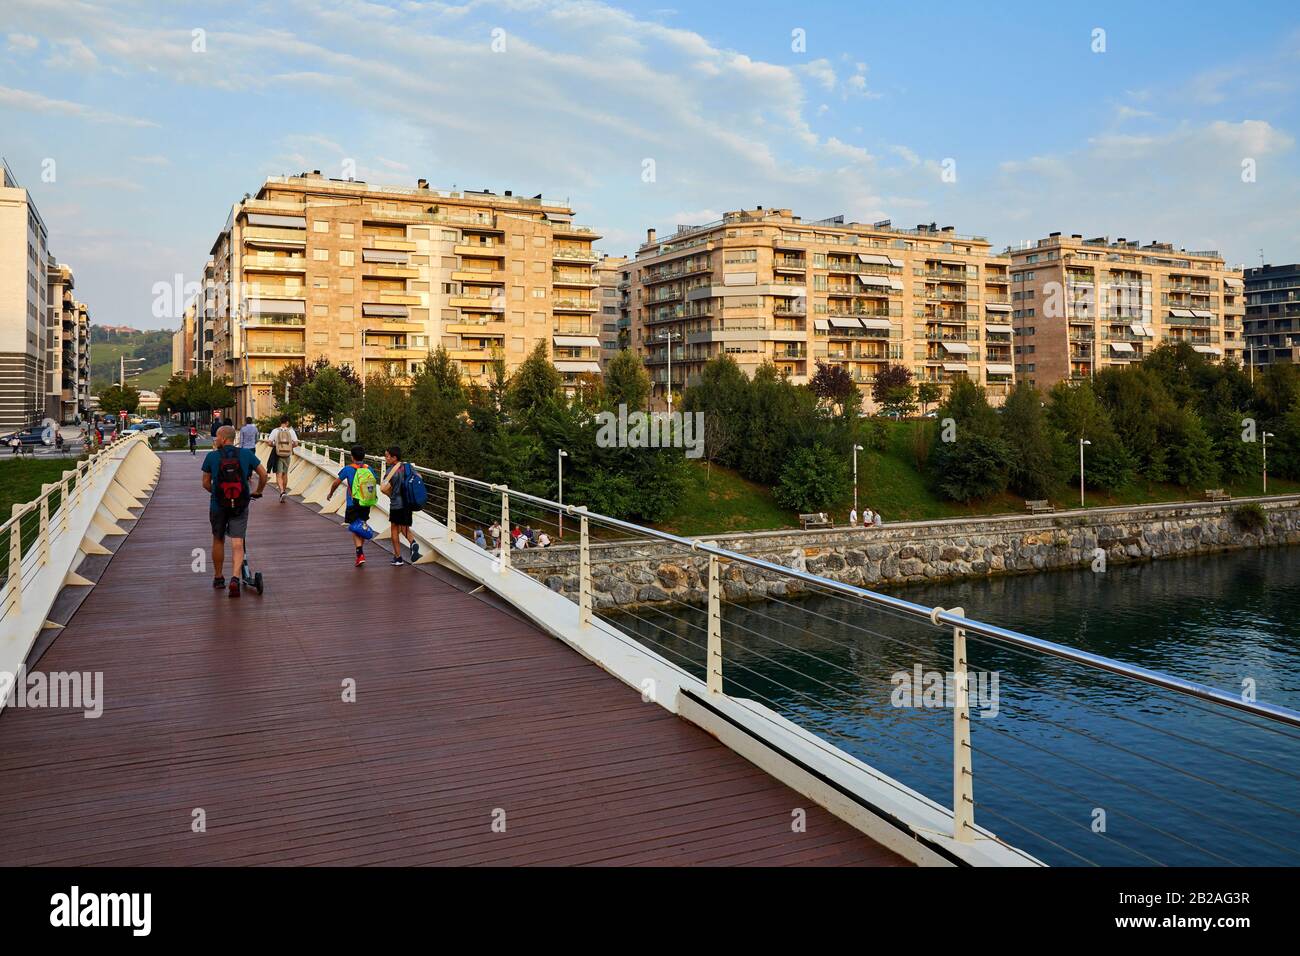 Puente Sobre El Río Urumea, Edificio De Apartamentos, Riberas De Loiola, Donostia, San Sebastián, Gipuzkoa, País Vasco, España, Europa Foto de stock